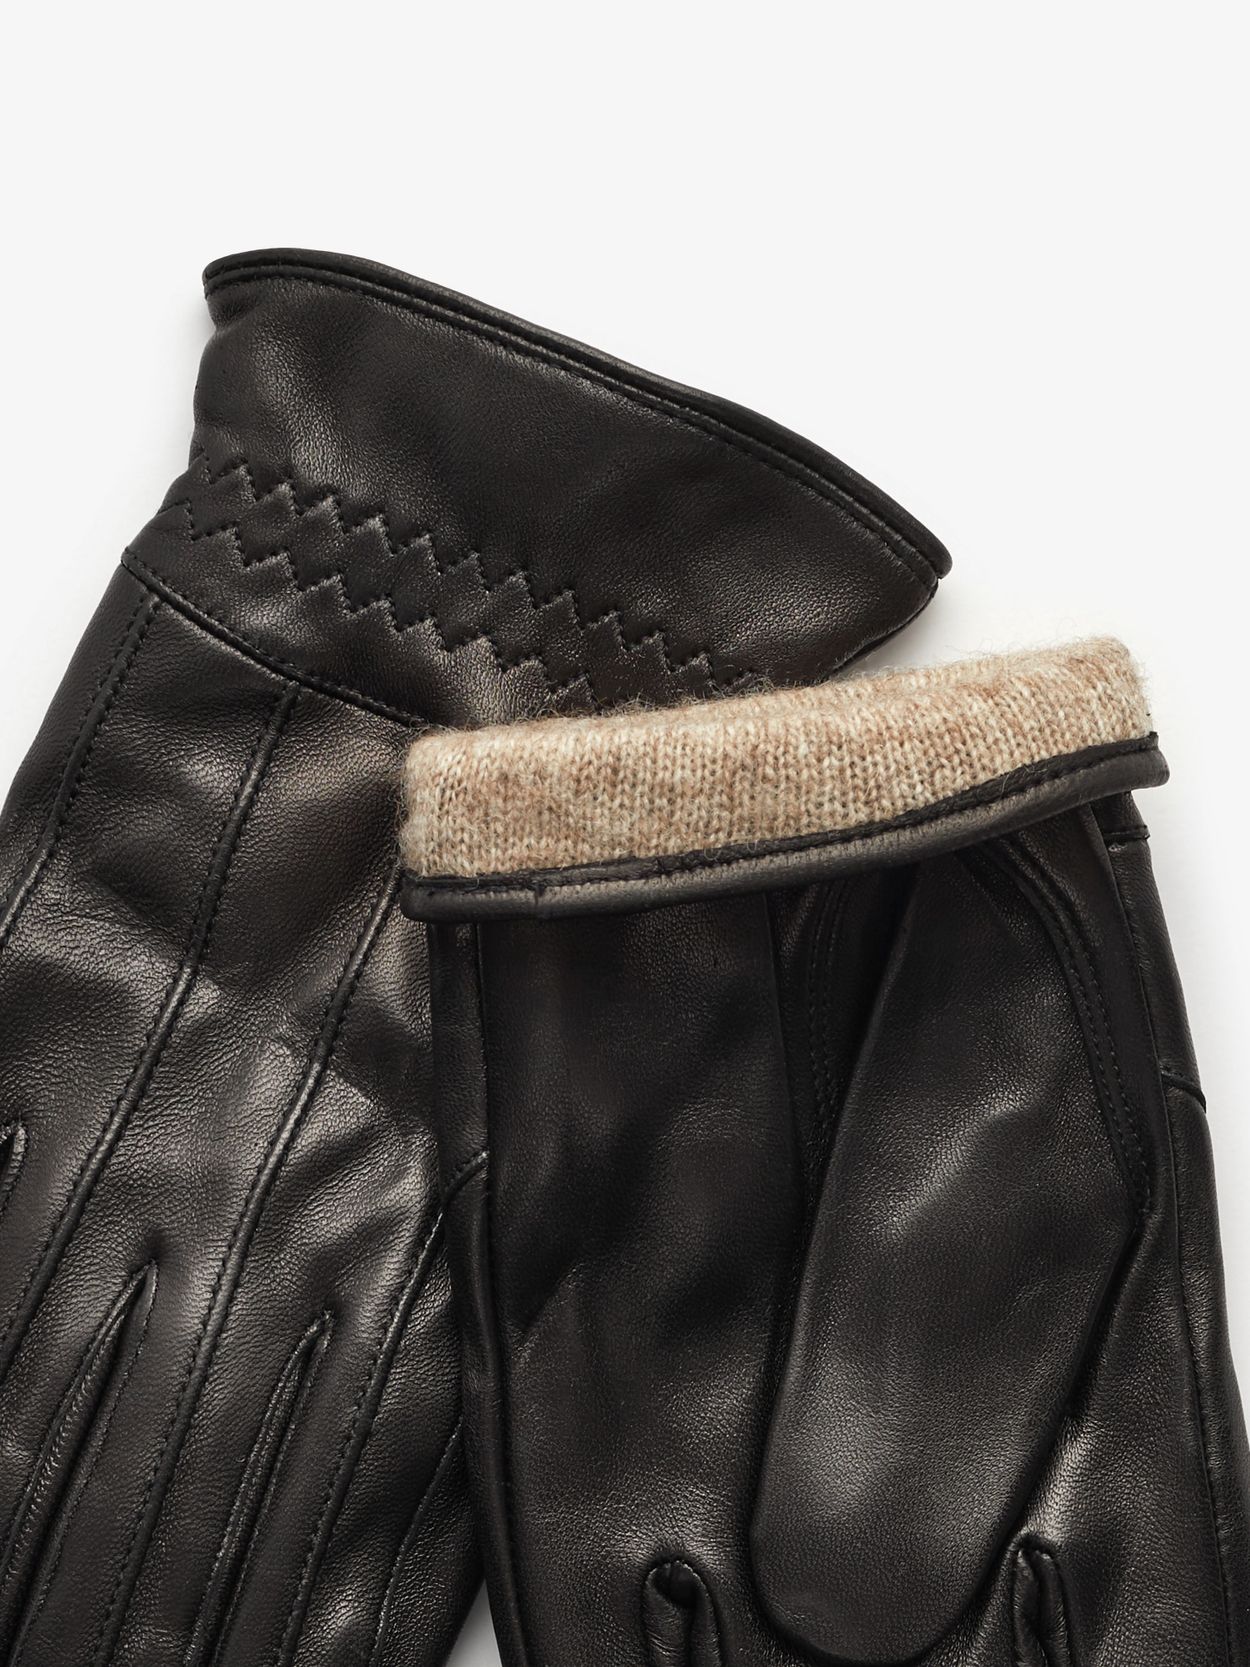 Black Leather Gloves Zermatt